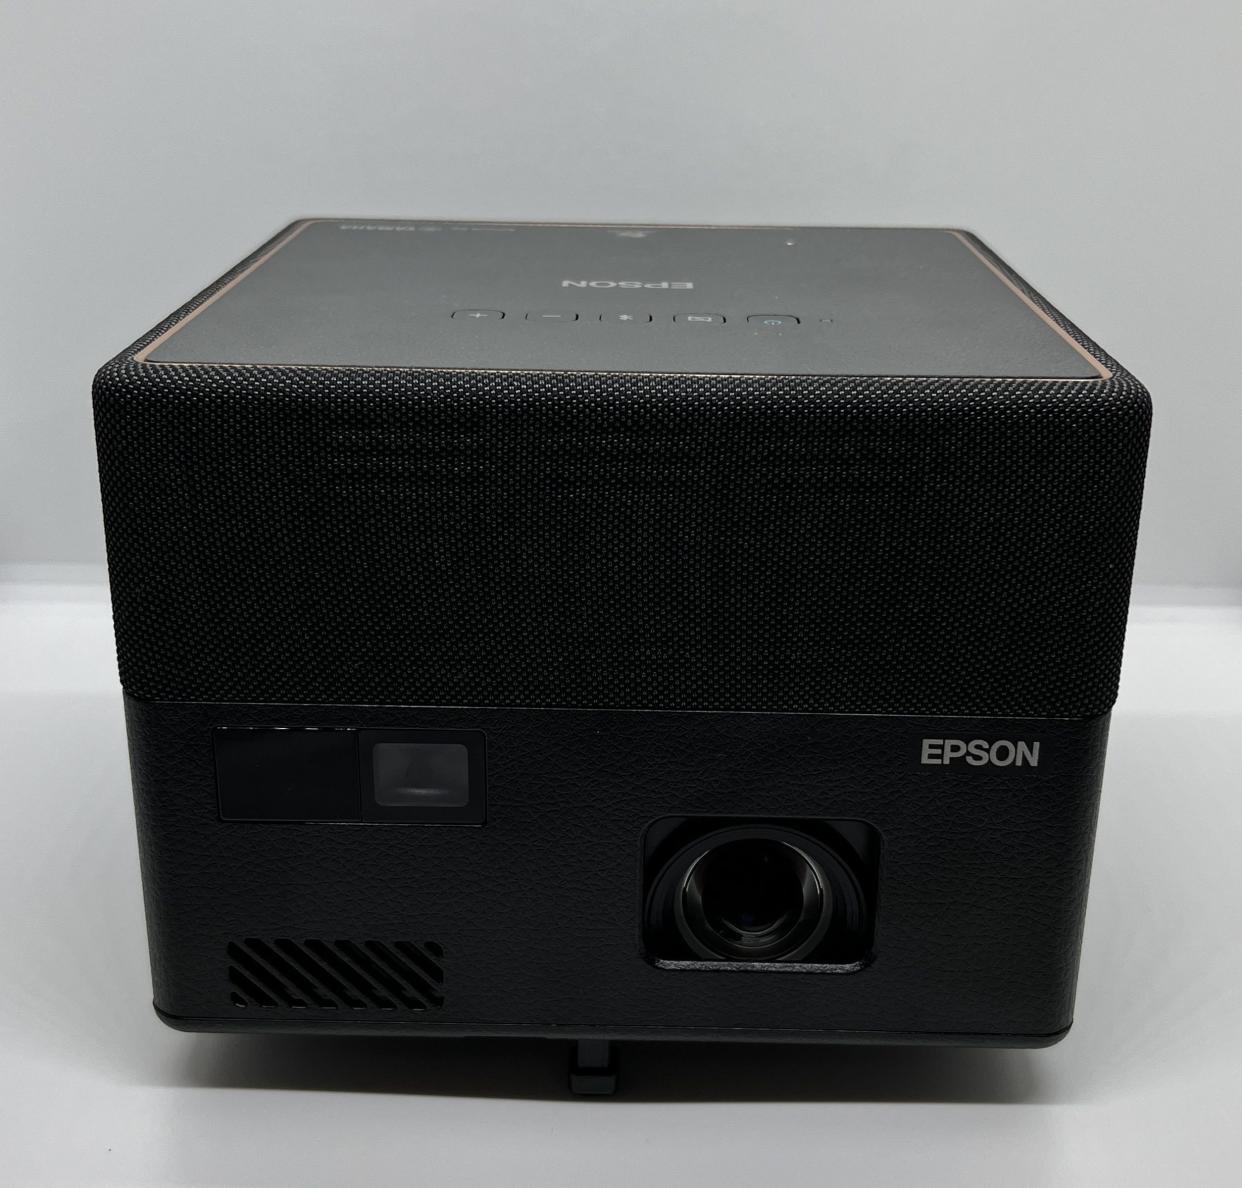 Best Portable Projectors, Epson-Epiqvision-EF12 Best Portable Projectors